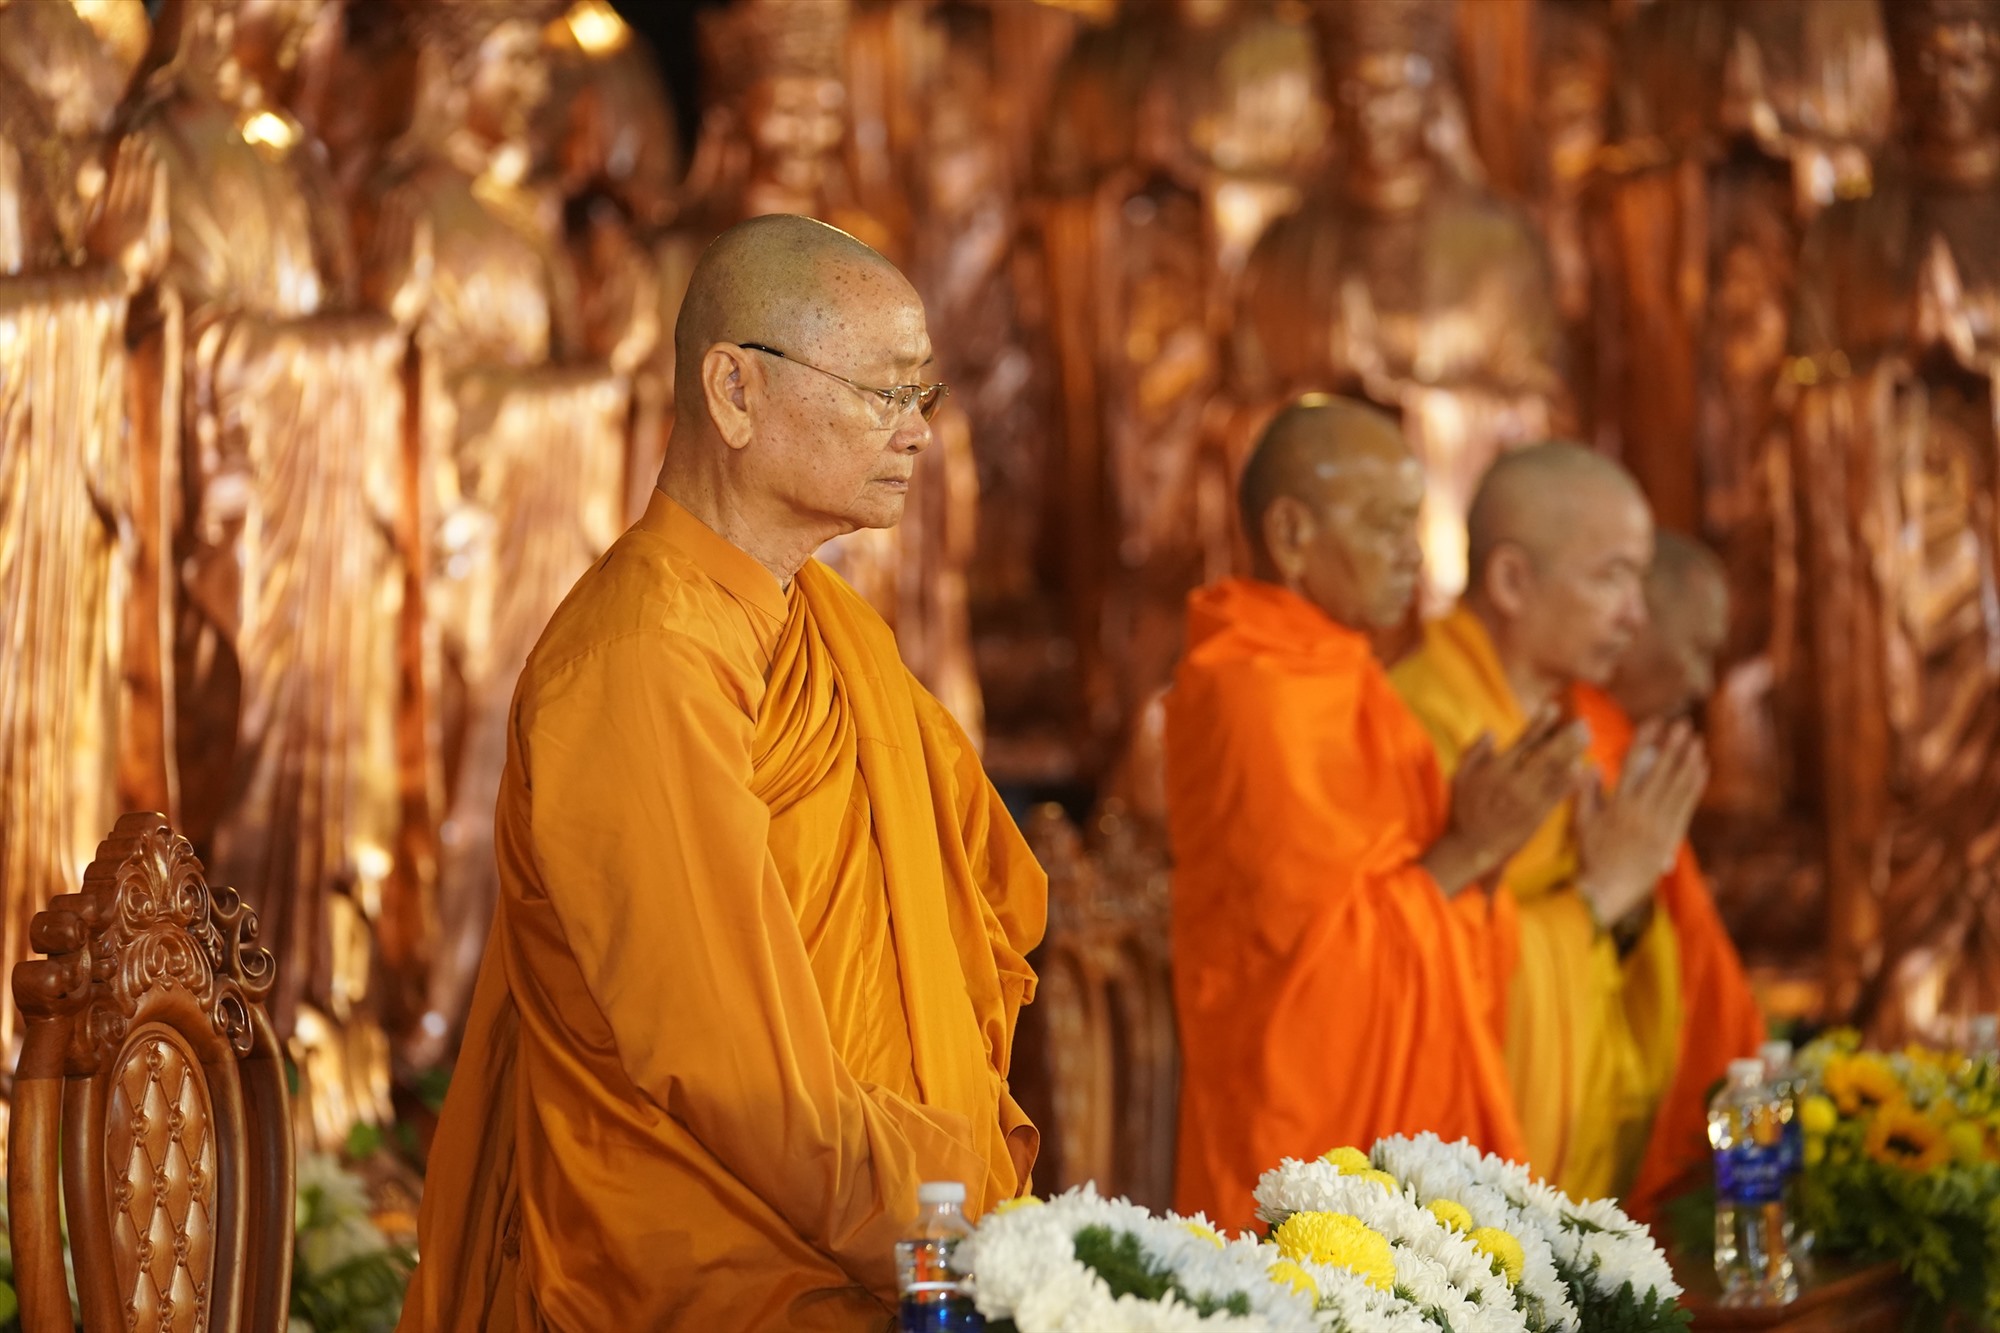 Đông đảo Phật tử và du khách đã tập trung tại khu triển lãm Phật giáo để lắng nghe Trưởng lão Hòa Thượng Viên Minh - Phó Pháp Chủ GHPGVN trò chuyện về nguồn gốc của ngày lễ Vu Lan và những chiêm nghiệm xoay quanh đức hiếu hạnh. Là một trong những thiền sư nổi tiếng trên con đường tu học, nghiên cứu và thuyết pháp về đạo Phật, Hoà thượng Viên Minh đã có những đóng góp đáng kể cho Phật giáo Việt Nam và nhận được rất nhiều sự kính trọng từ các Phật tử trong và ngoài nước. 